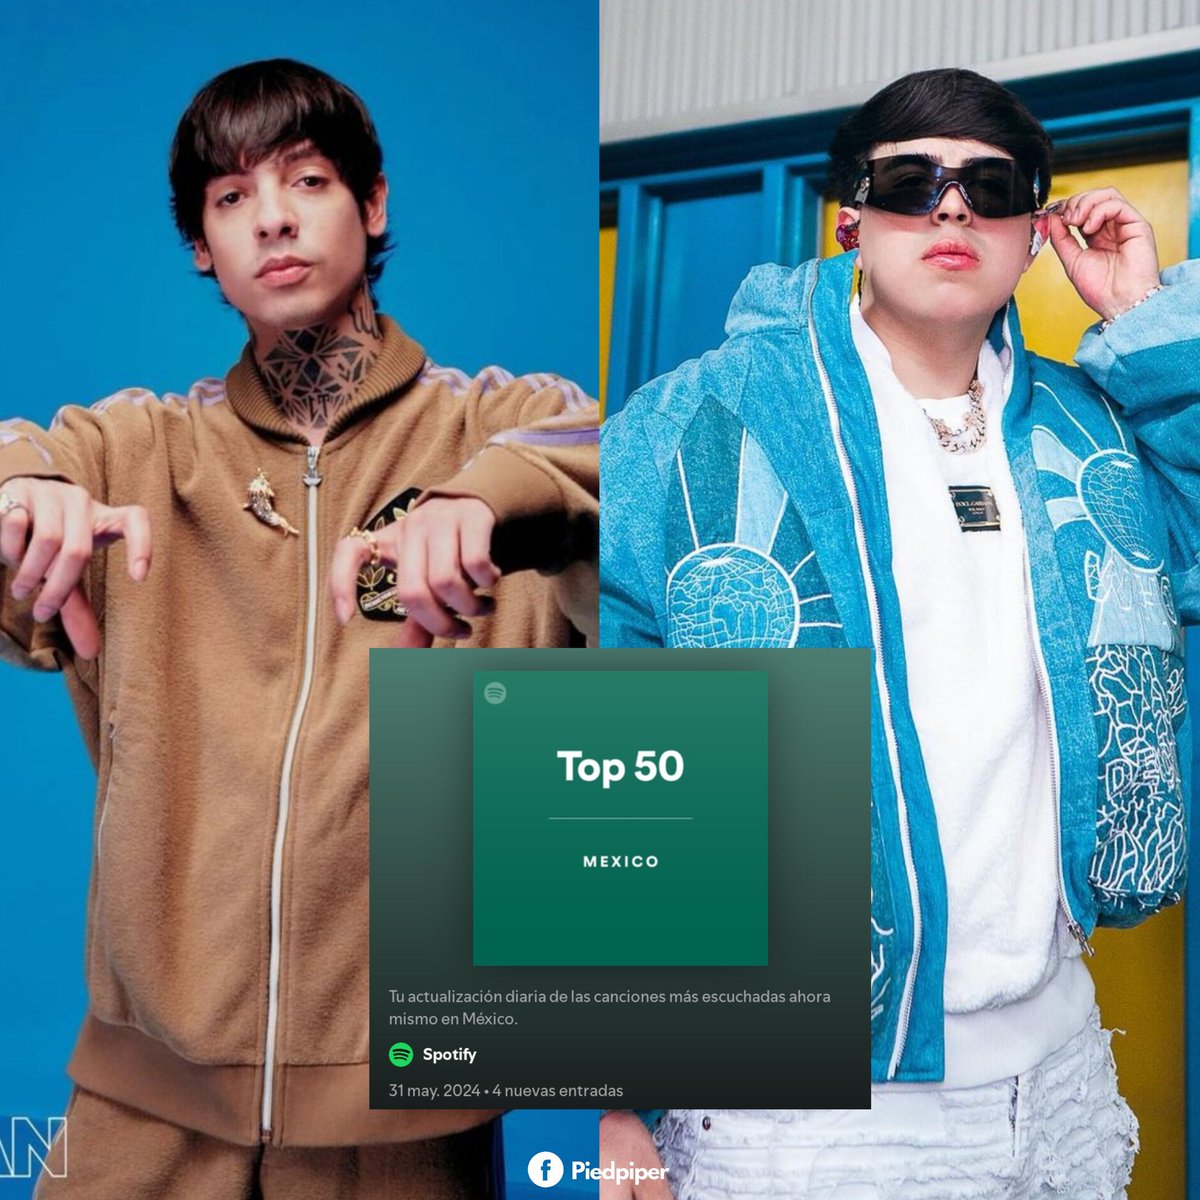 Oscar Maydon y Natanael Cano son los artistas con más canciones dentro del Top 10 de Spotify México, con 3 canciones cada uno. 🔥🇲🇽🏴‍☠️

Ambos comparten la posición #1.